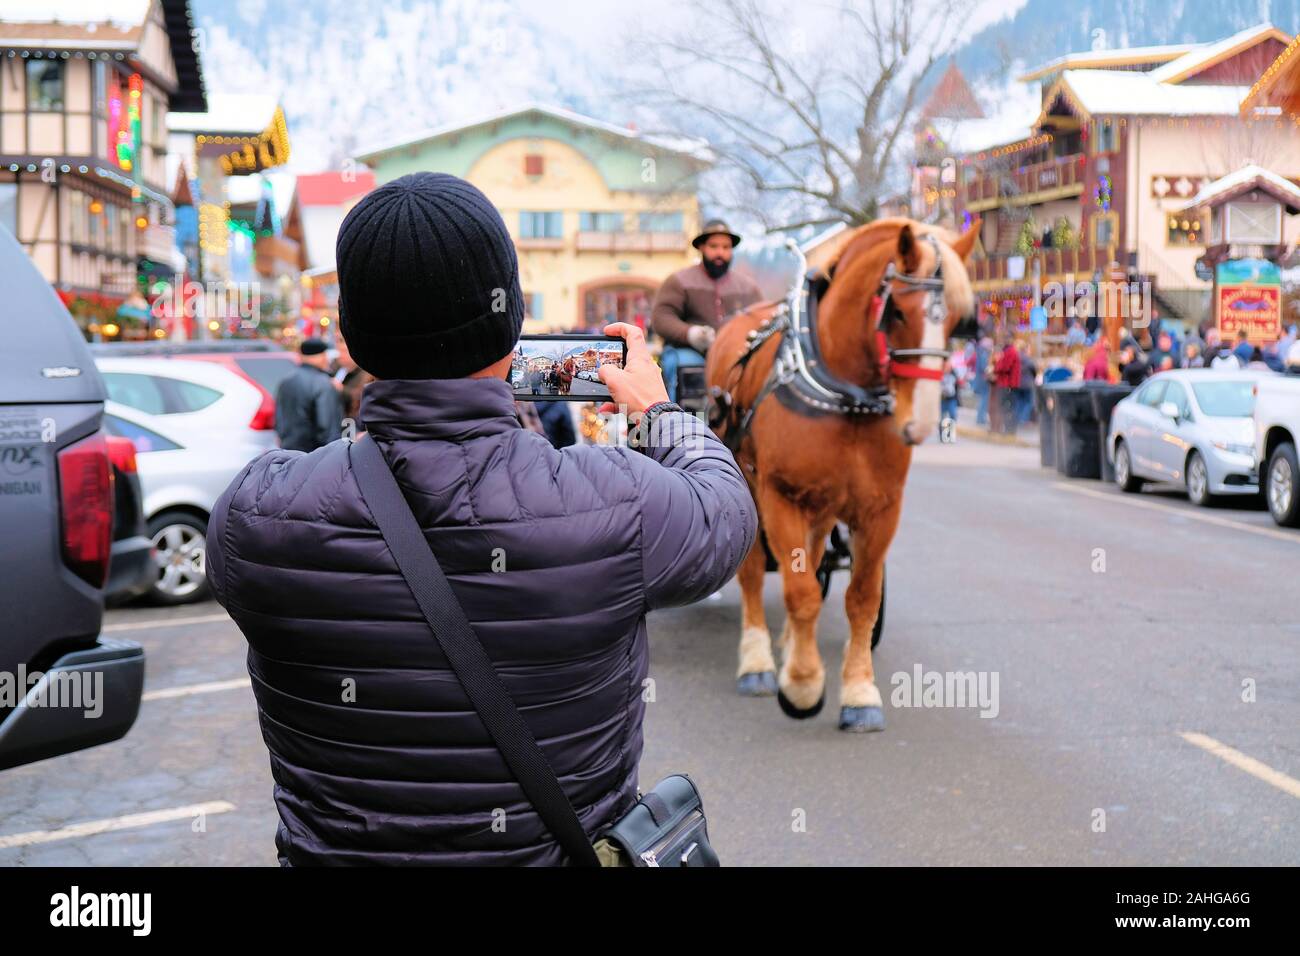 Turistica prendendo un telefono cellulare foto di una carrozza trainata da cavalli; immagine all'interno di un'immagine, turismo invernale in Leavenworth, nello Stato di Washington, USA. Foto Stock